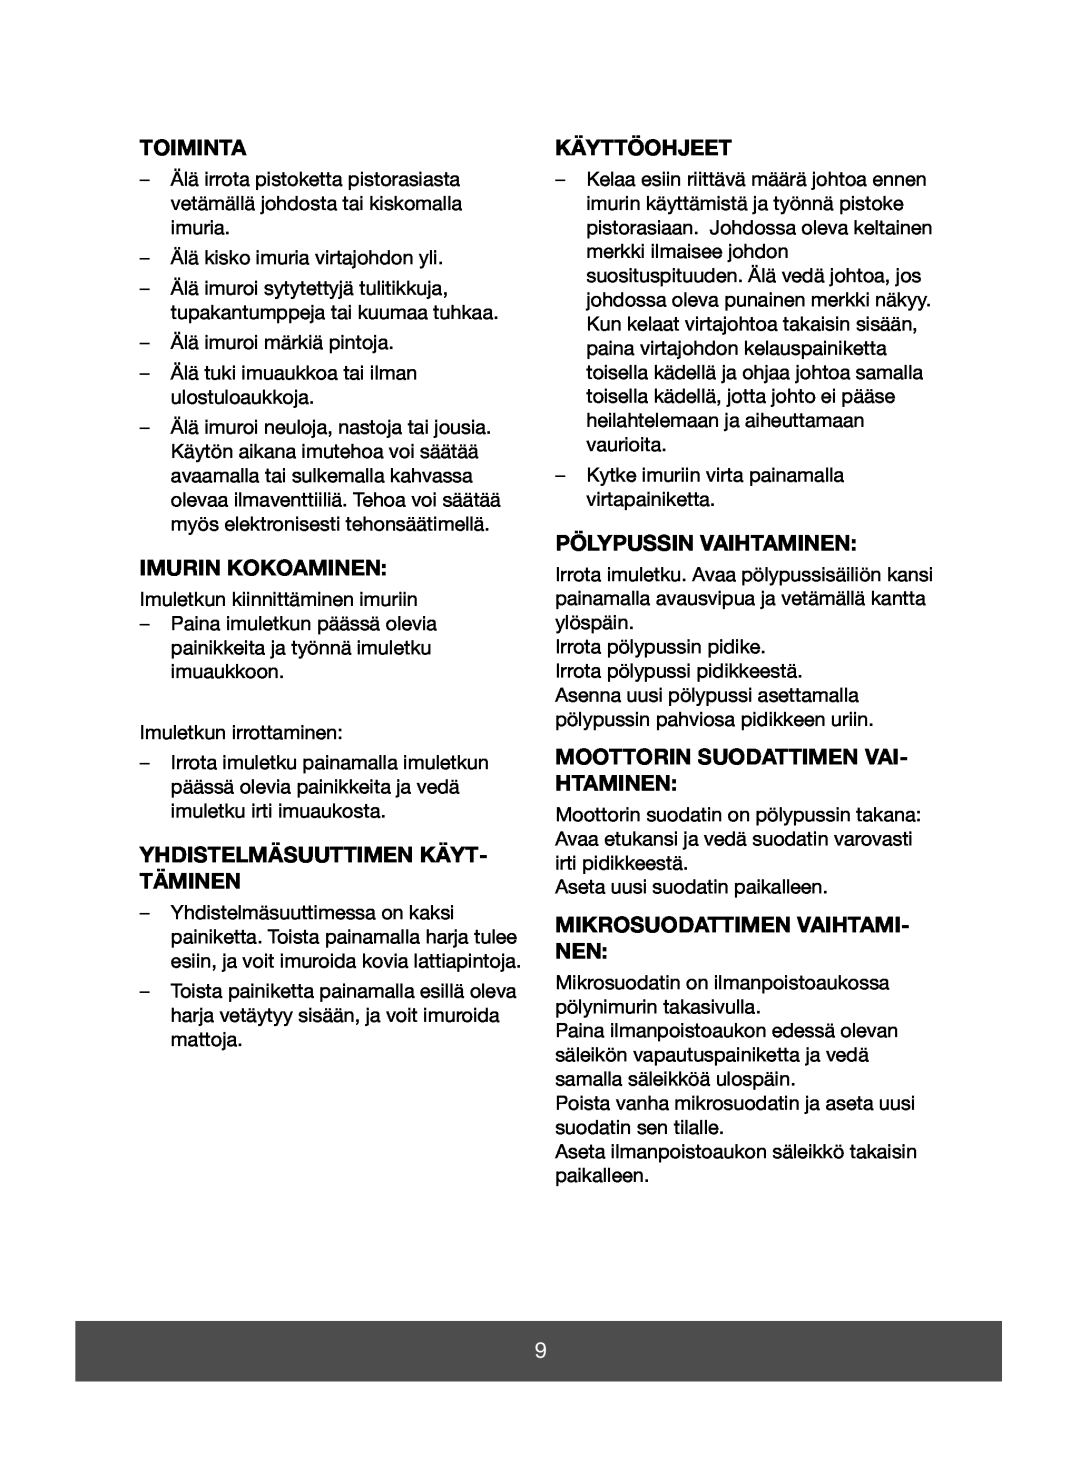 Melissa 640-123 manual Toiminta, Imurin Kokoaminen, Yhdistelmäsuuttimen Käyt- Täminen, Käyttöohjeet, Pölypussin Vaihtaminen 